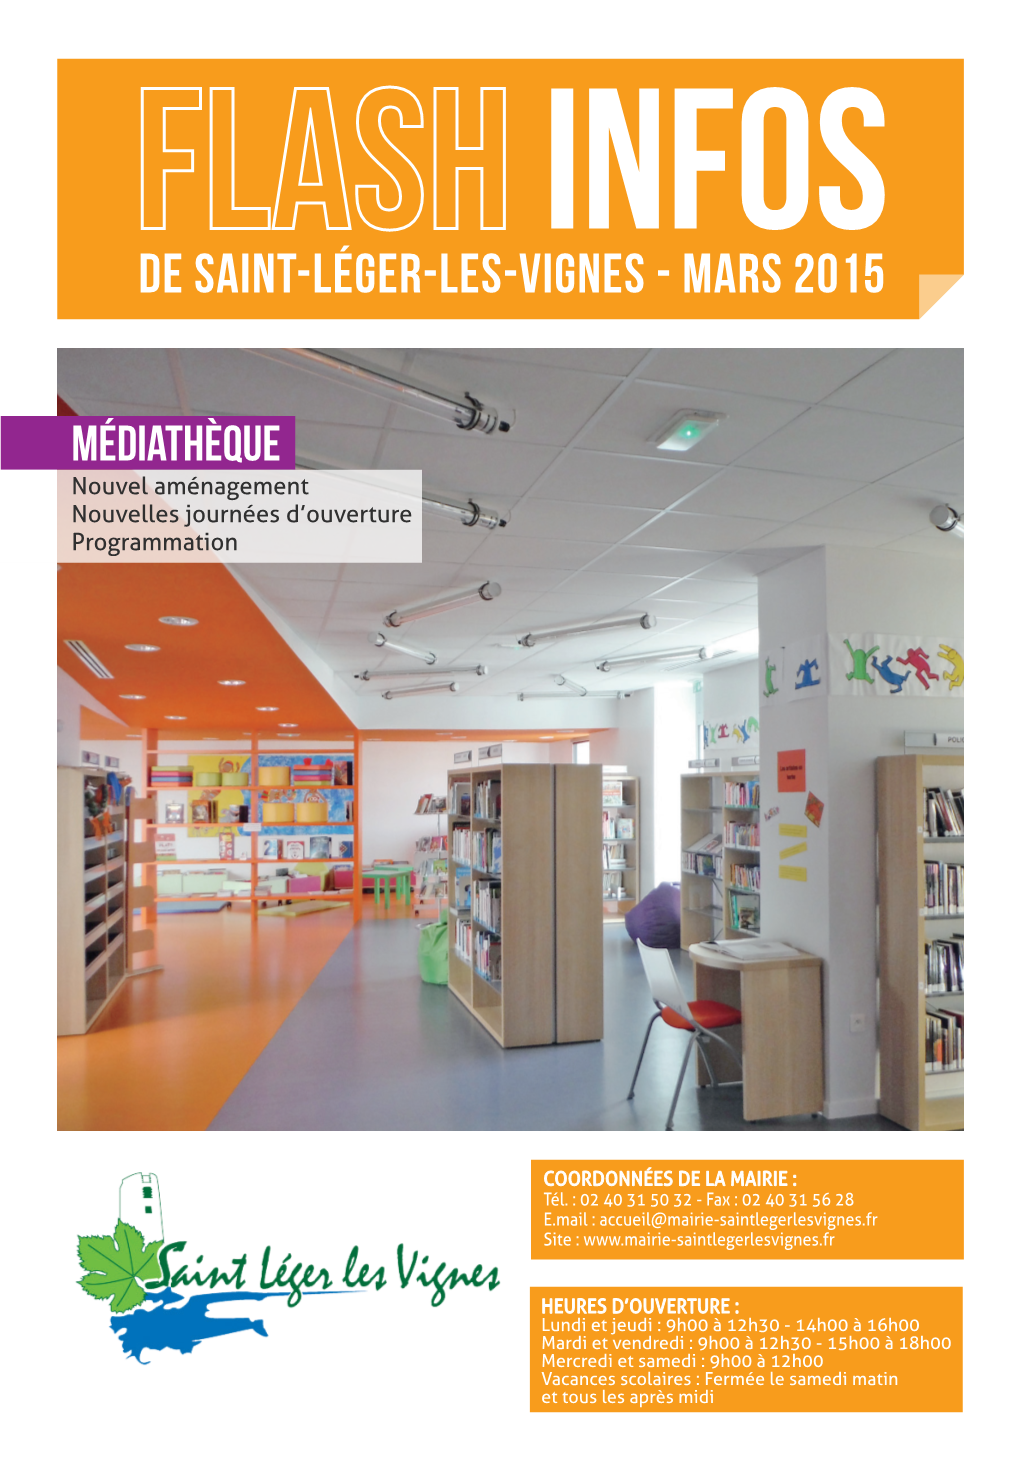 De Saint-Léger-Les-Vignes - Mars 2015